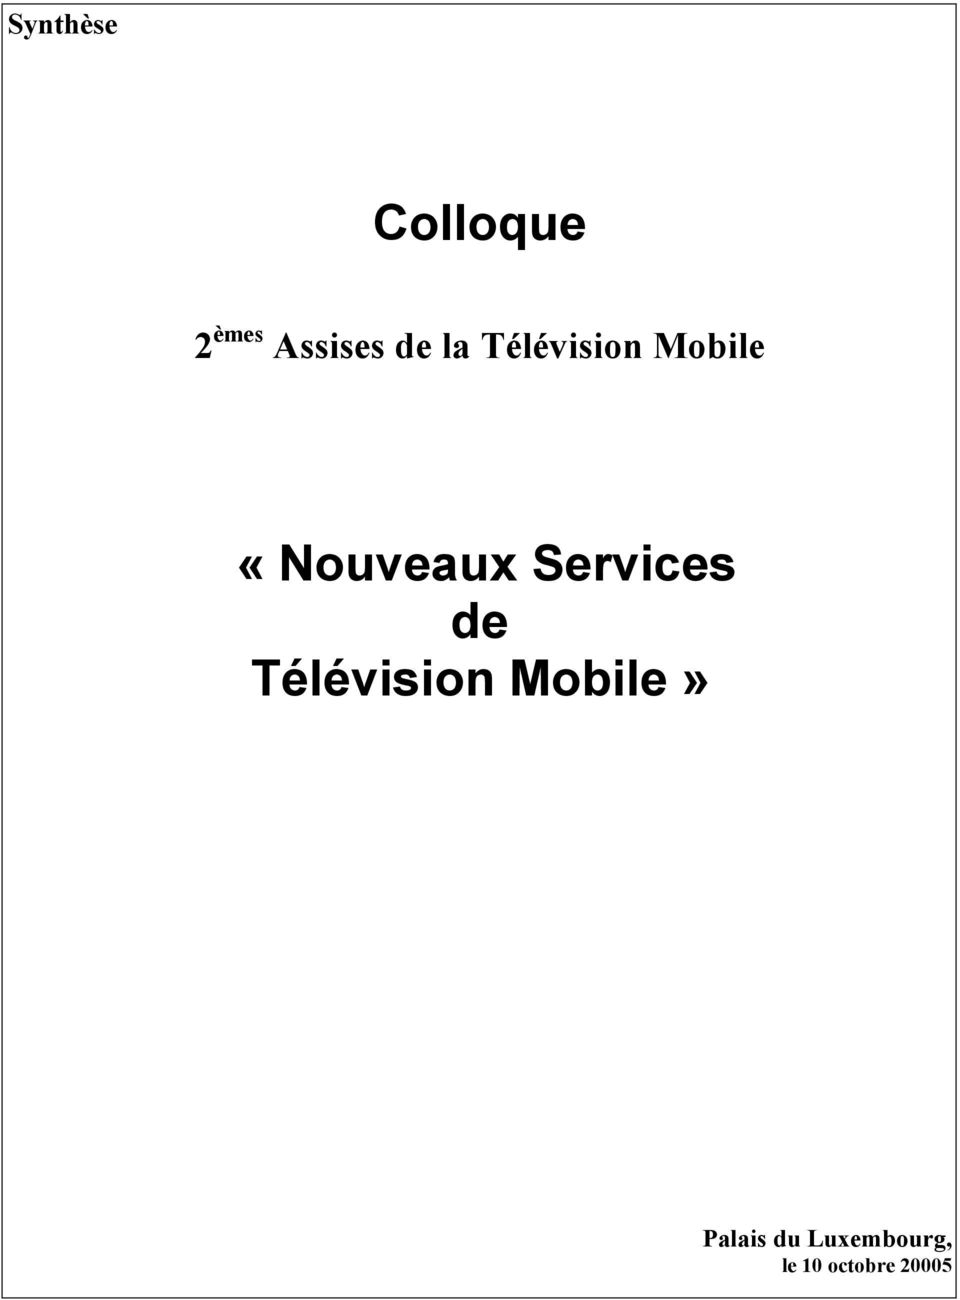 Services de Télévision Mobile»